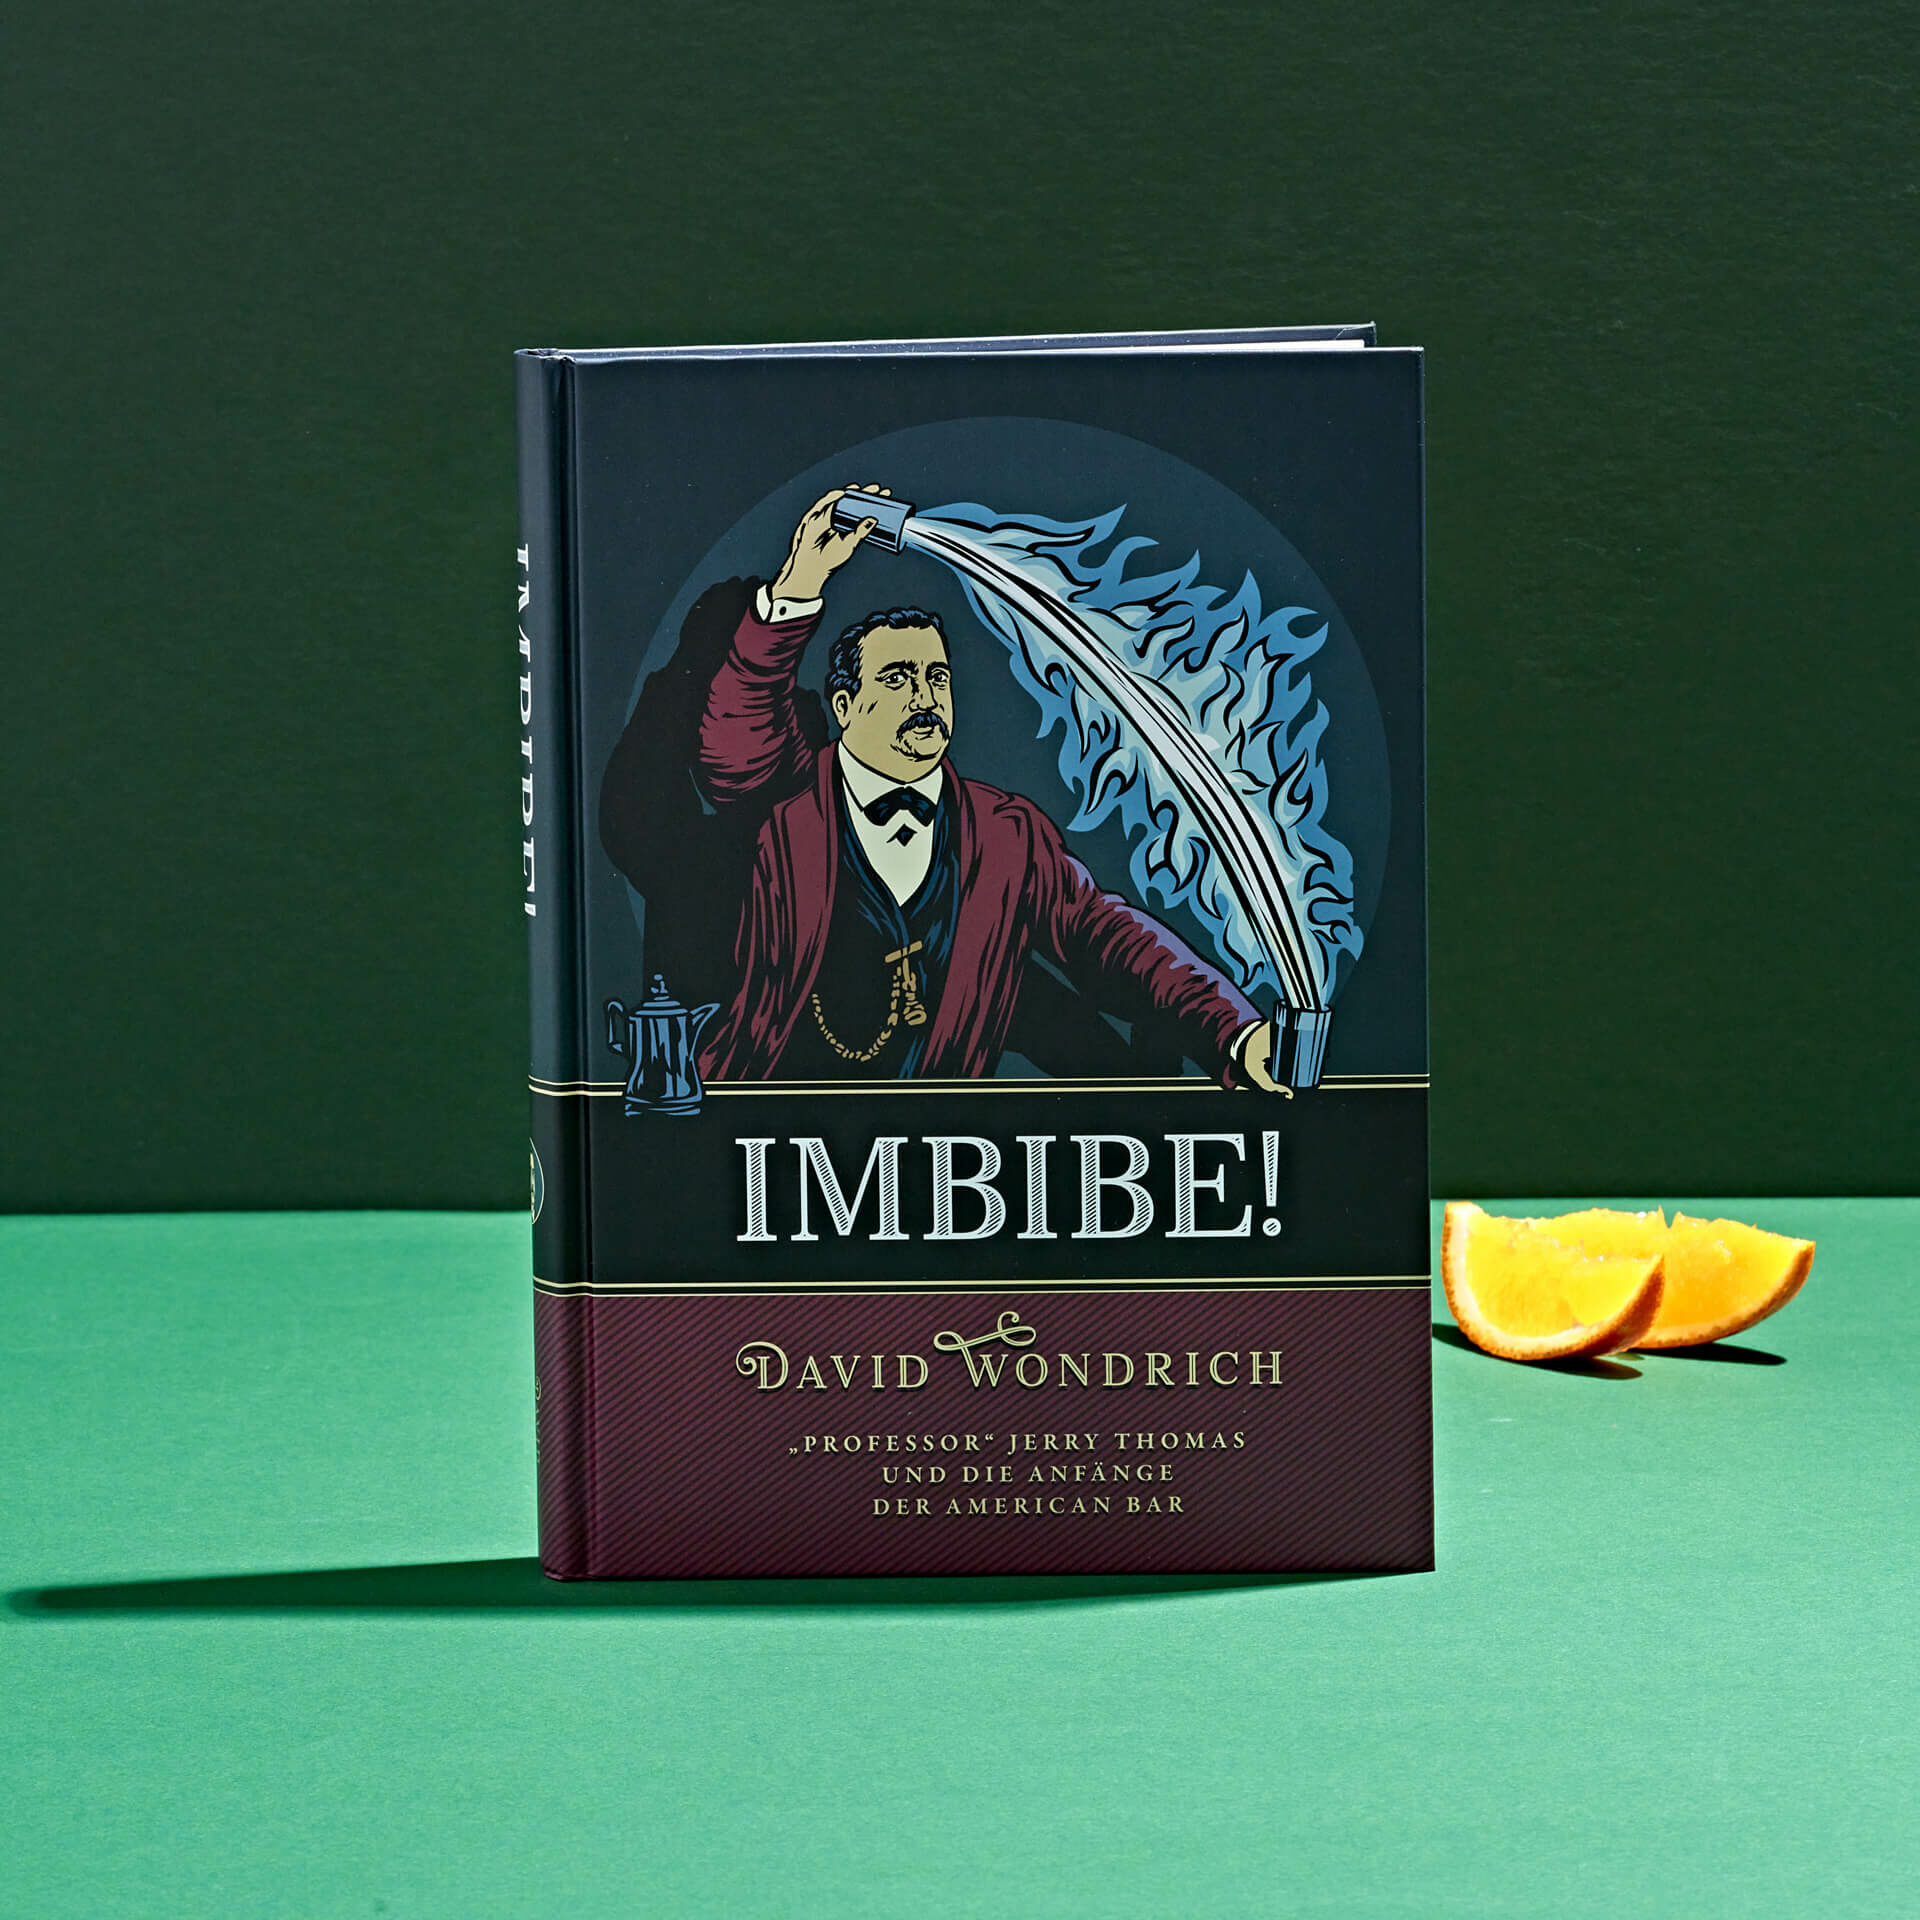 David Wondrich Imbibe Cocktail-Buch deutsche Fassung - deutsche Übersetzung - Cocktail Bücher bei Drink Syndikat